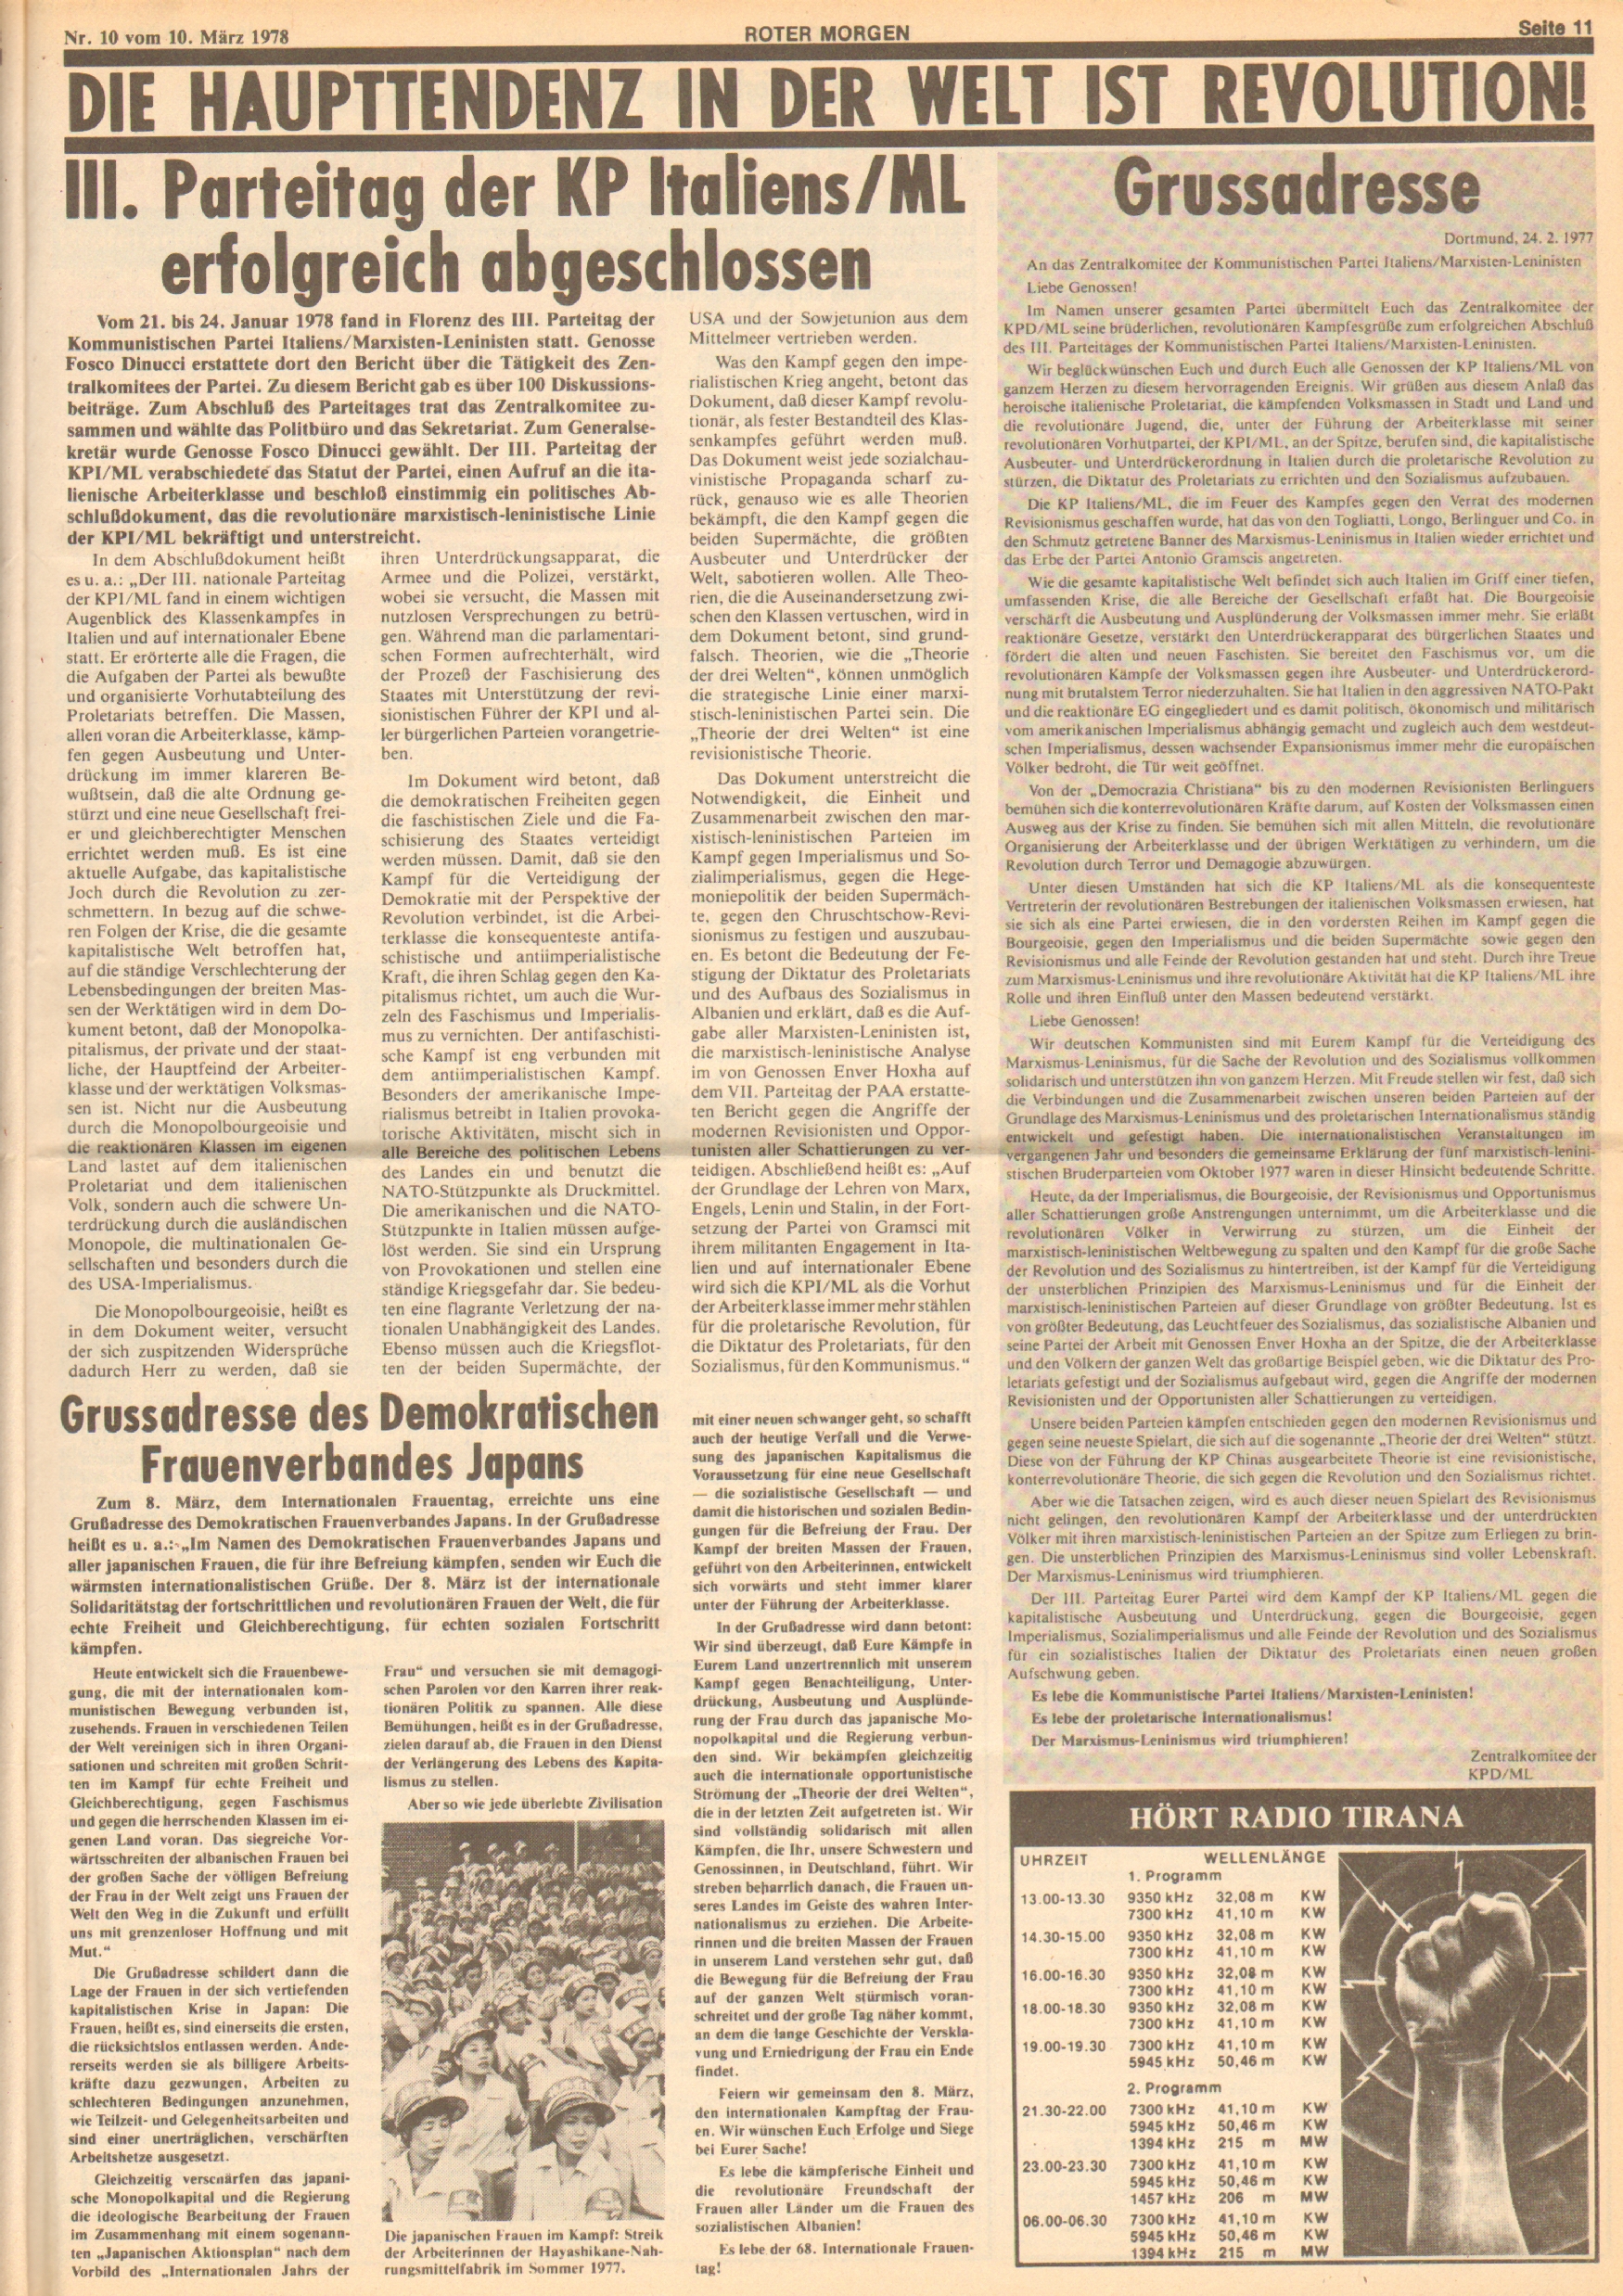 Roter Morgen, 12. Jg., 10. März 1978, Nr. 10, Seite 11